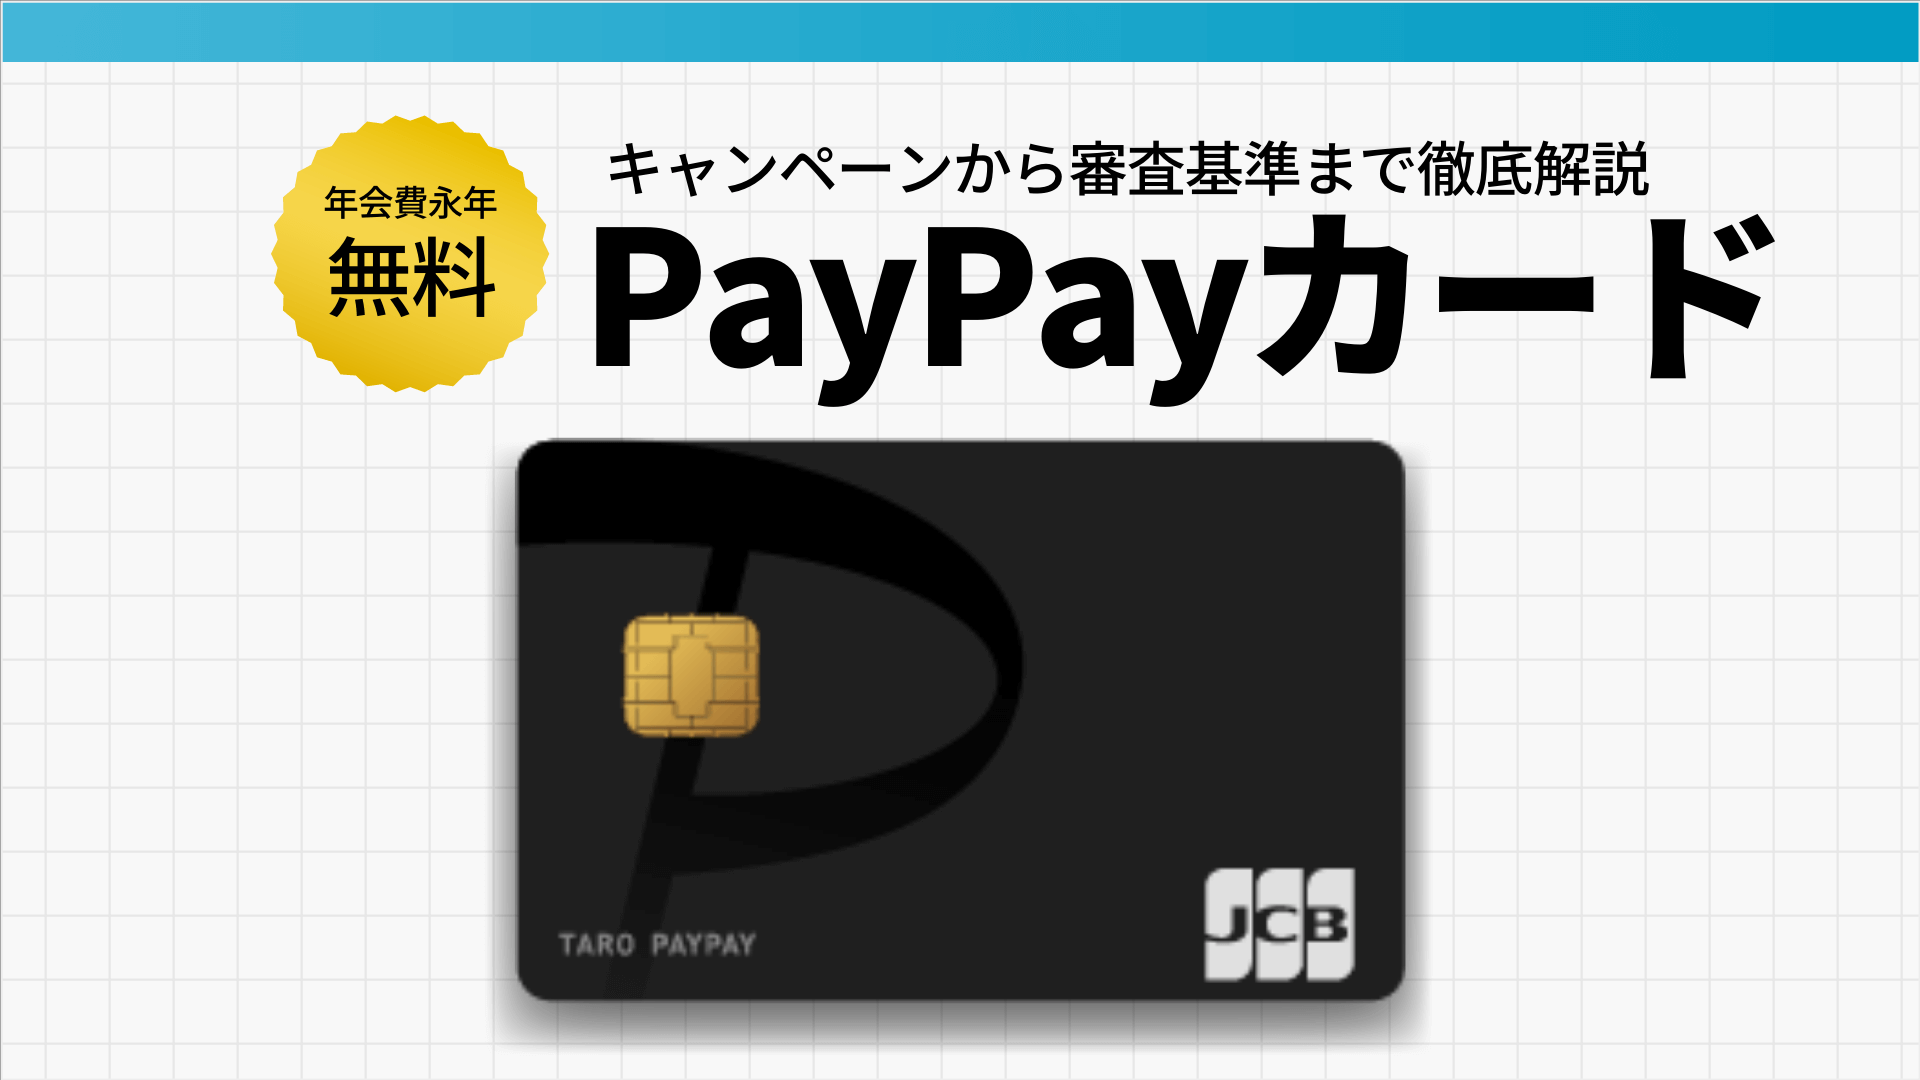 されない 特典 付与 paypay カード 入会 ヤフーカードのキャンペーンの3回利用の最低金額と対象外のケース｜金融Lab.